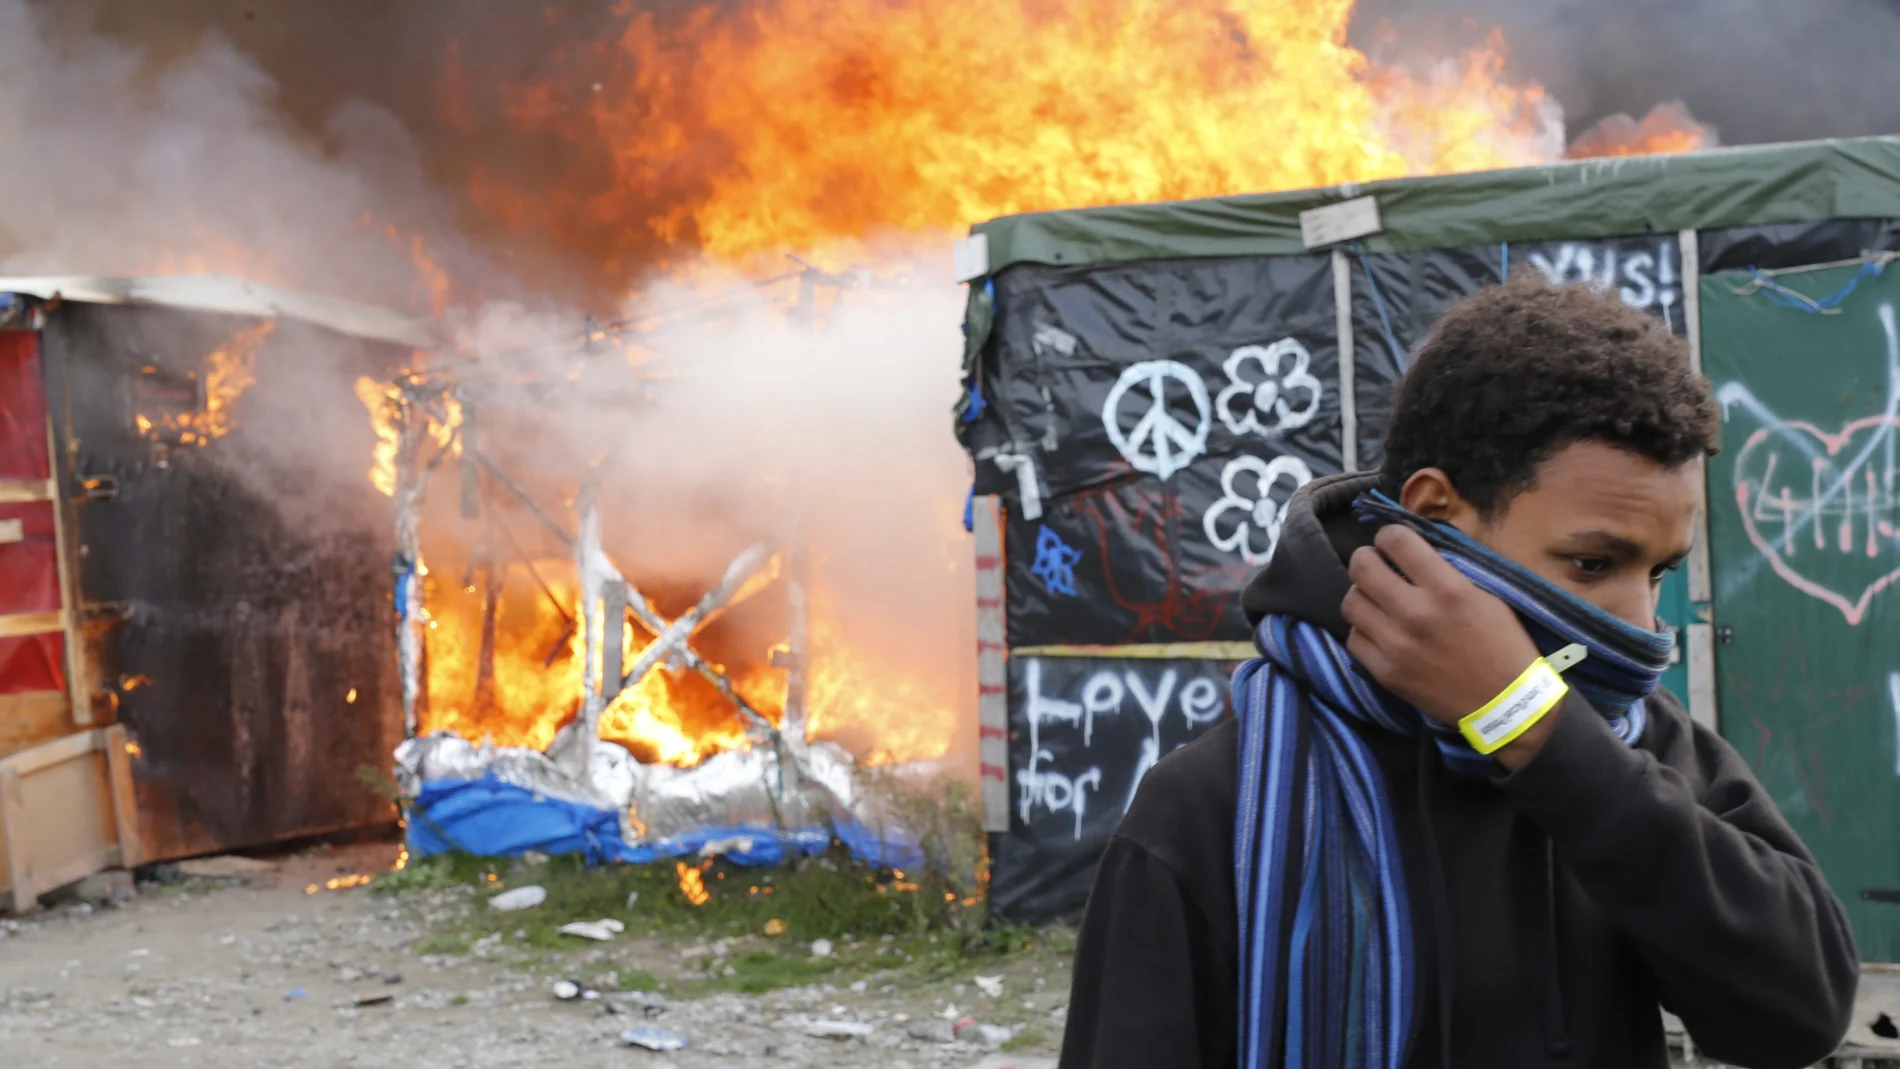 Un migrante se protege el rostro al pasar junto a chabolas en llamas durante el desmantelamiento del campamento conocido como la 'Jungla' de Calais 